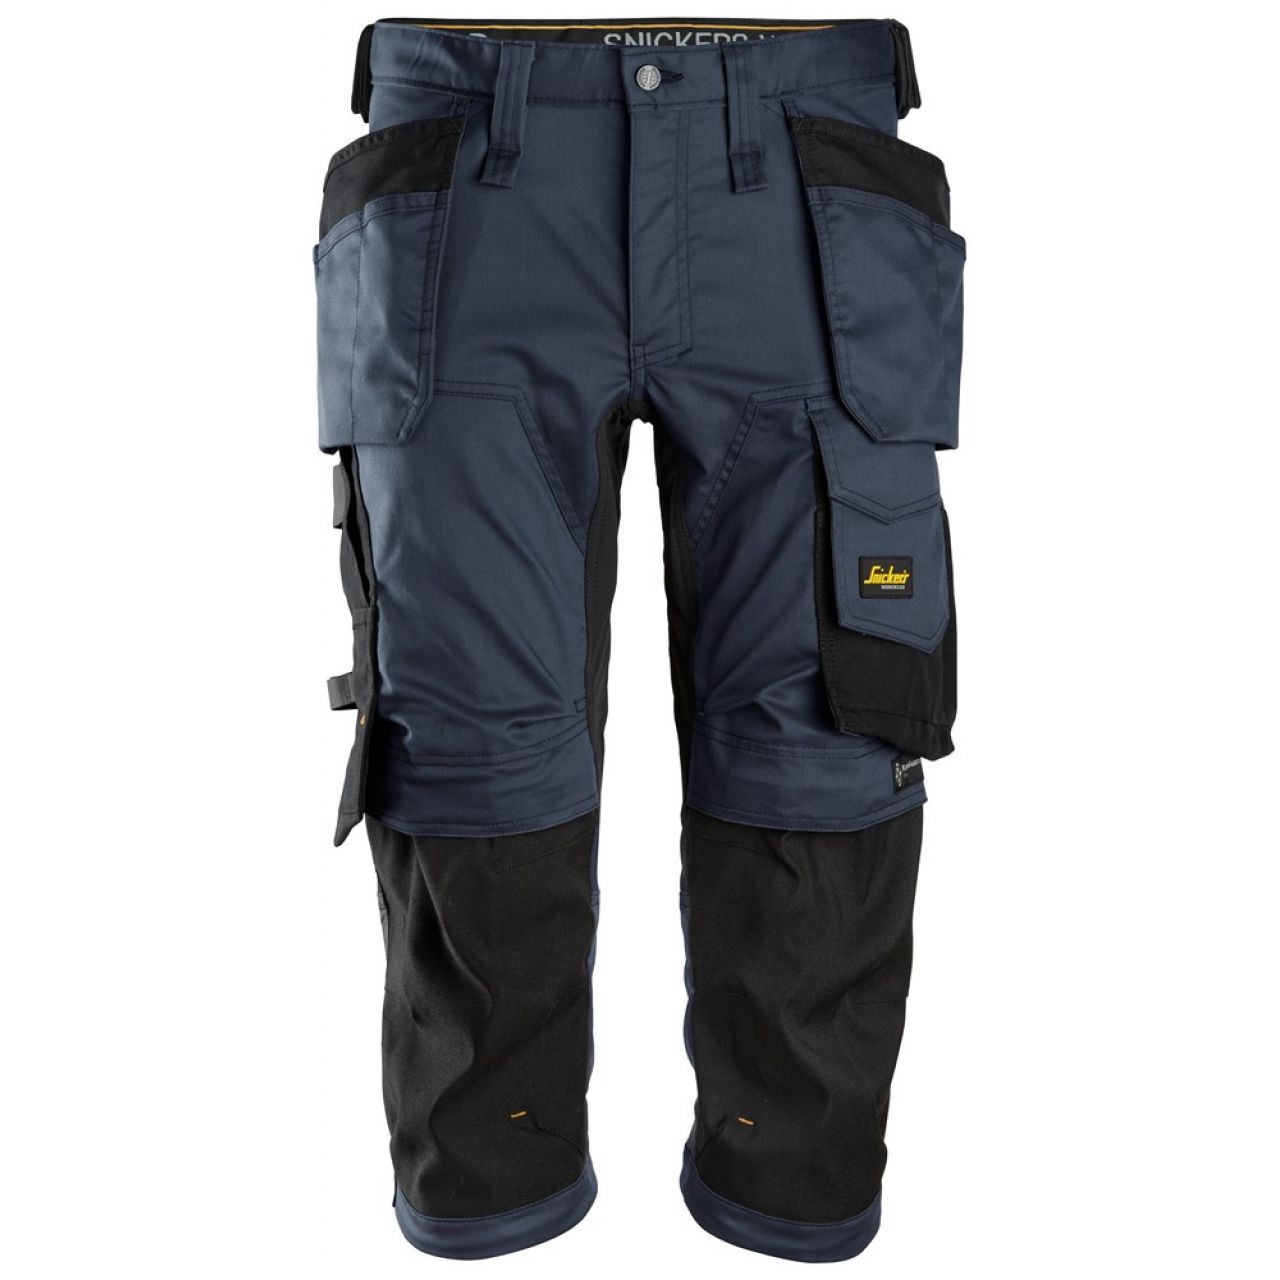 6142 Pantalones pirata de trabajo elasticos con bolsillos flotantes AllroundWork azul marino-negro talla 50